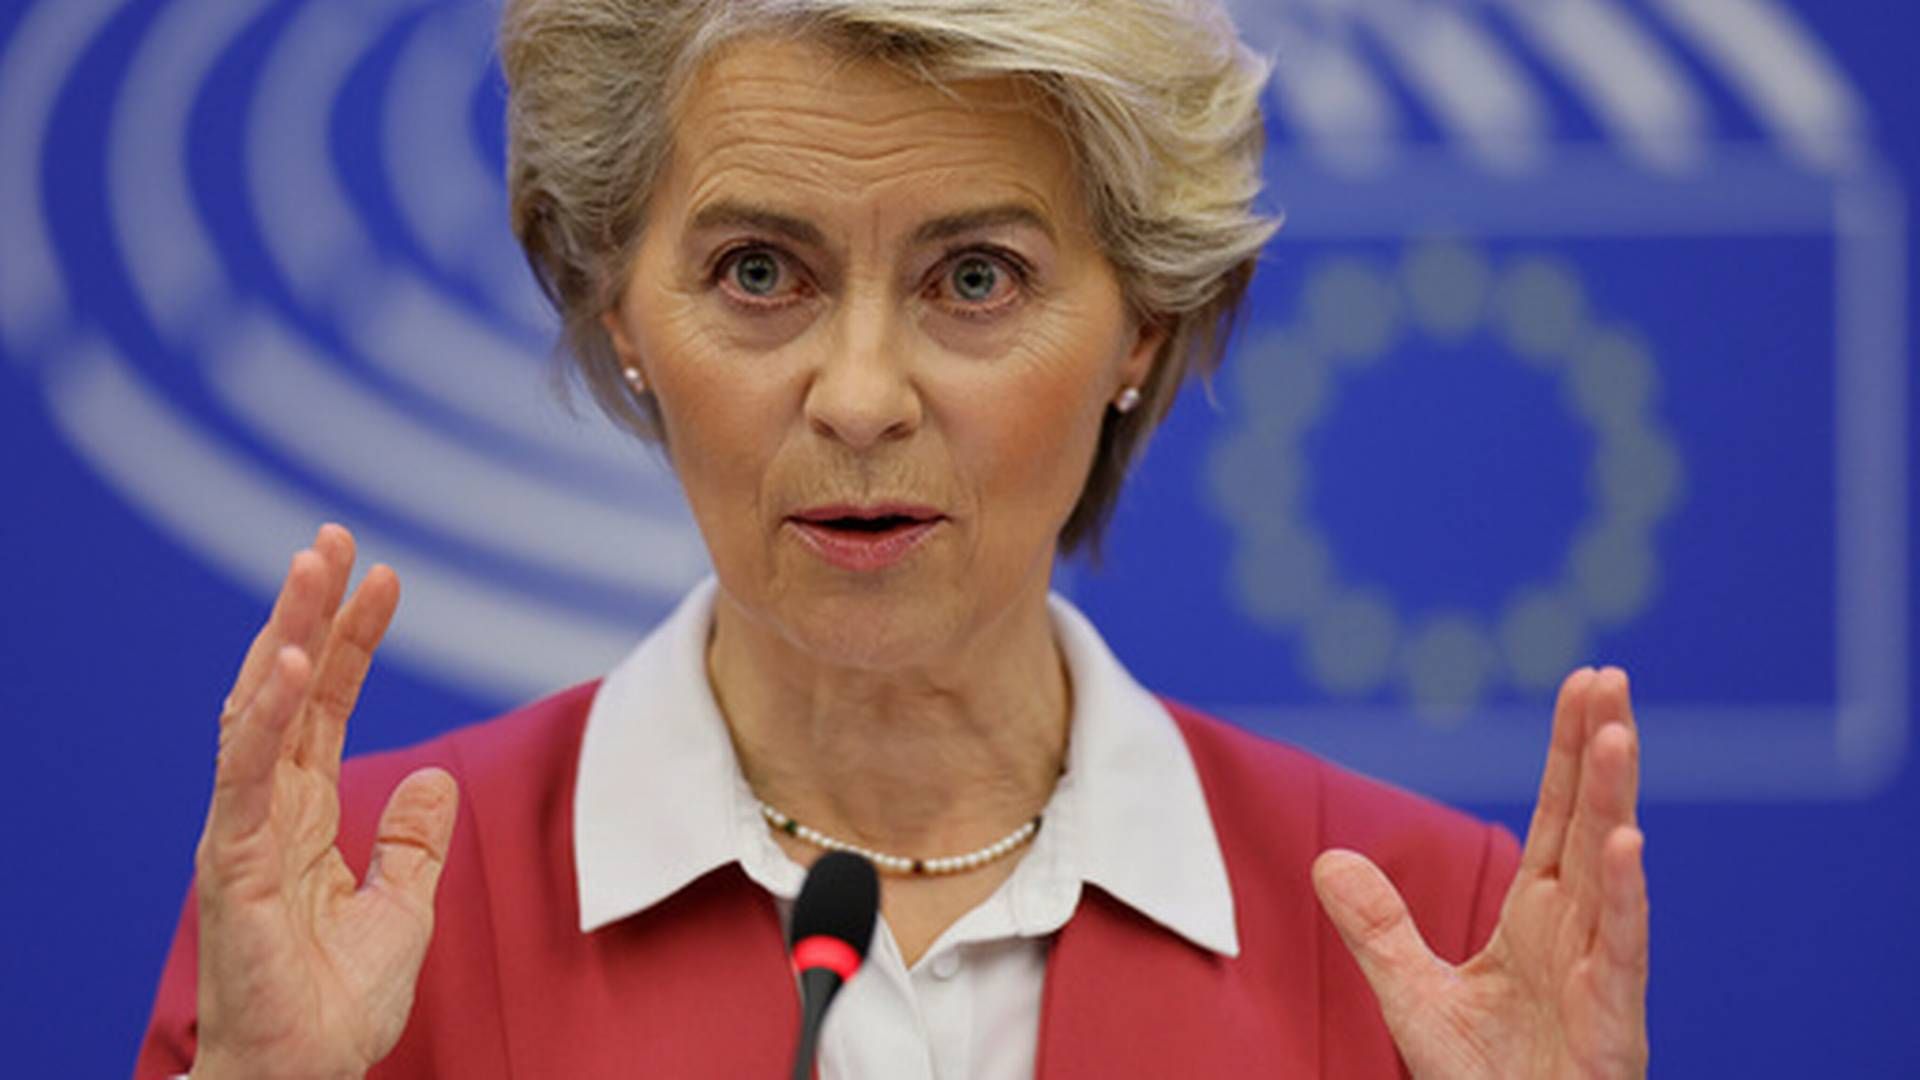 FÅR NEI FRA NORGE: EU-topp Ursula von der Leyen vil forhandle, men olje- og energiminister Terje Aasland (Ap) avviser at det er aktuelt med samtaler om en priskorridor på gass. | Foto: Jean-Francois Badias/AP/NTB